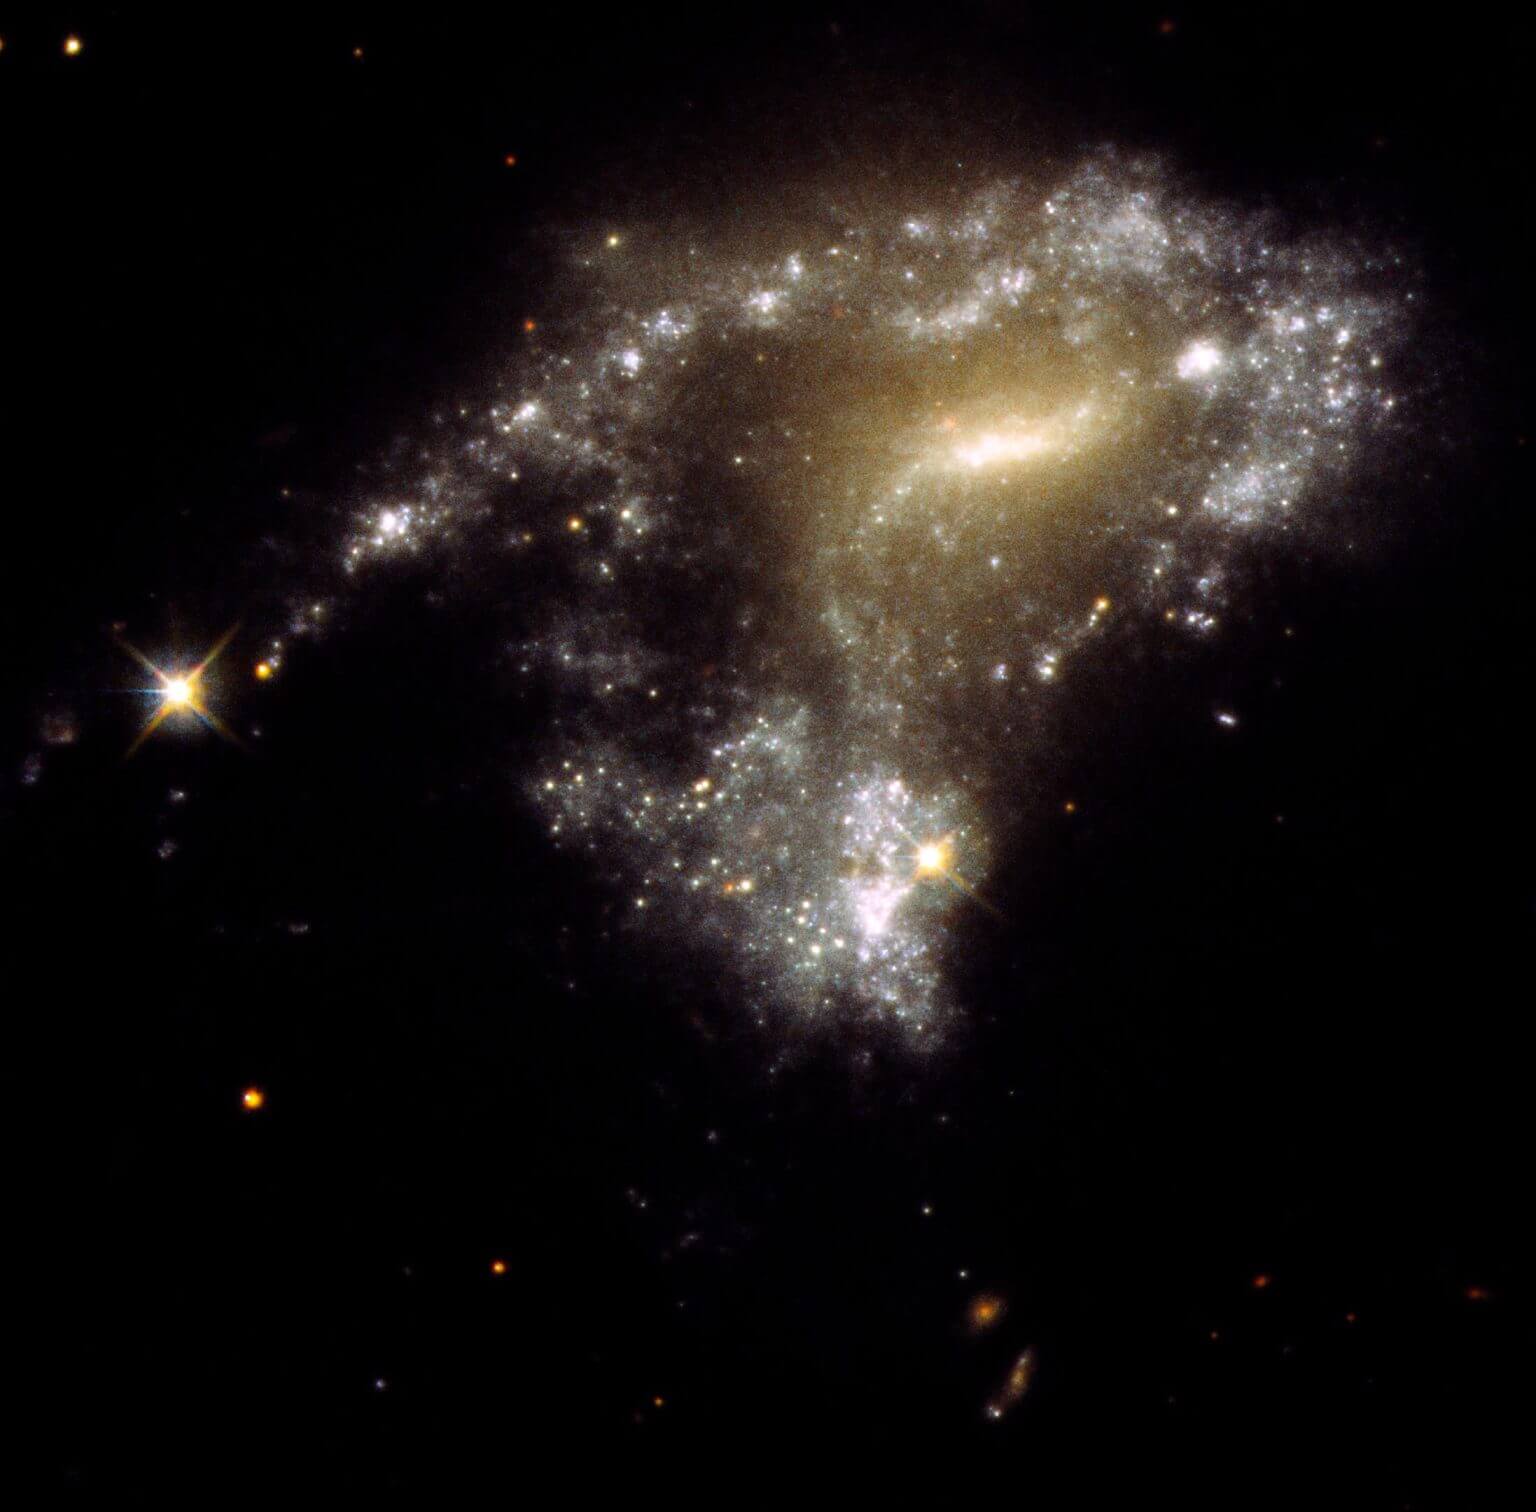 הגלקסיה AM 1054-325 התעוותה מצורה ספירלית נורמלית דמוית פנקייק לצורת S על ידי כוח המשיכה של גלקסיה שכנה, כפי שרואים בתמונה הזאת של טלסקופ החלל האבל. כתוצאה מכך נוצרו צבירי כוכבים חדשים לאורך זנב גאות מתוח לאורך אלפי שנות אור, שדומים לשרשרת פנינים.
קרדיט: NASA, ESA, STScI, Jayanne English (University of Manitoba)